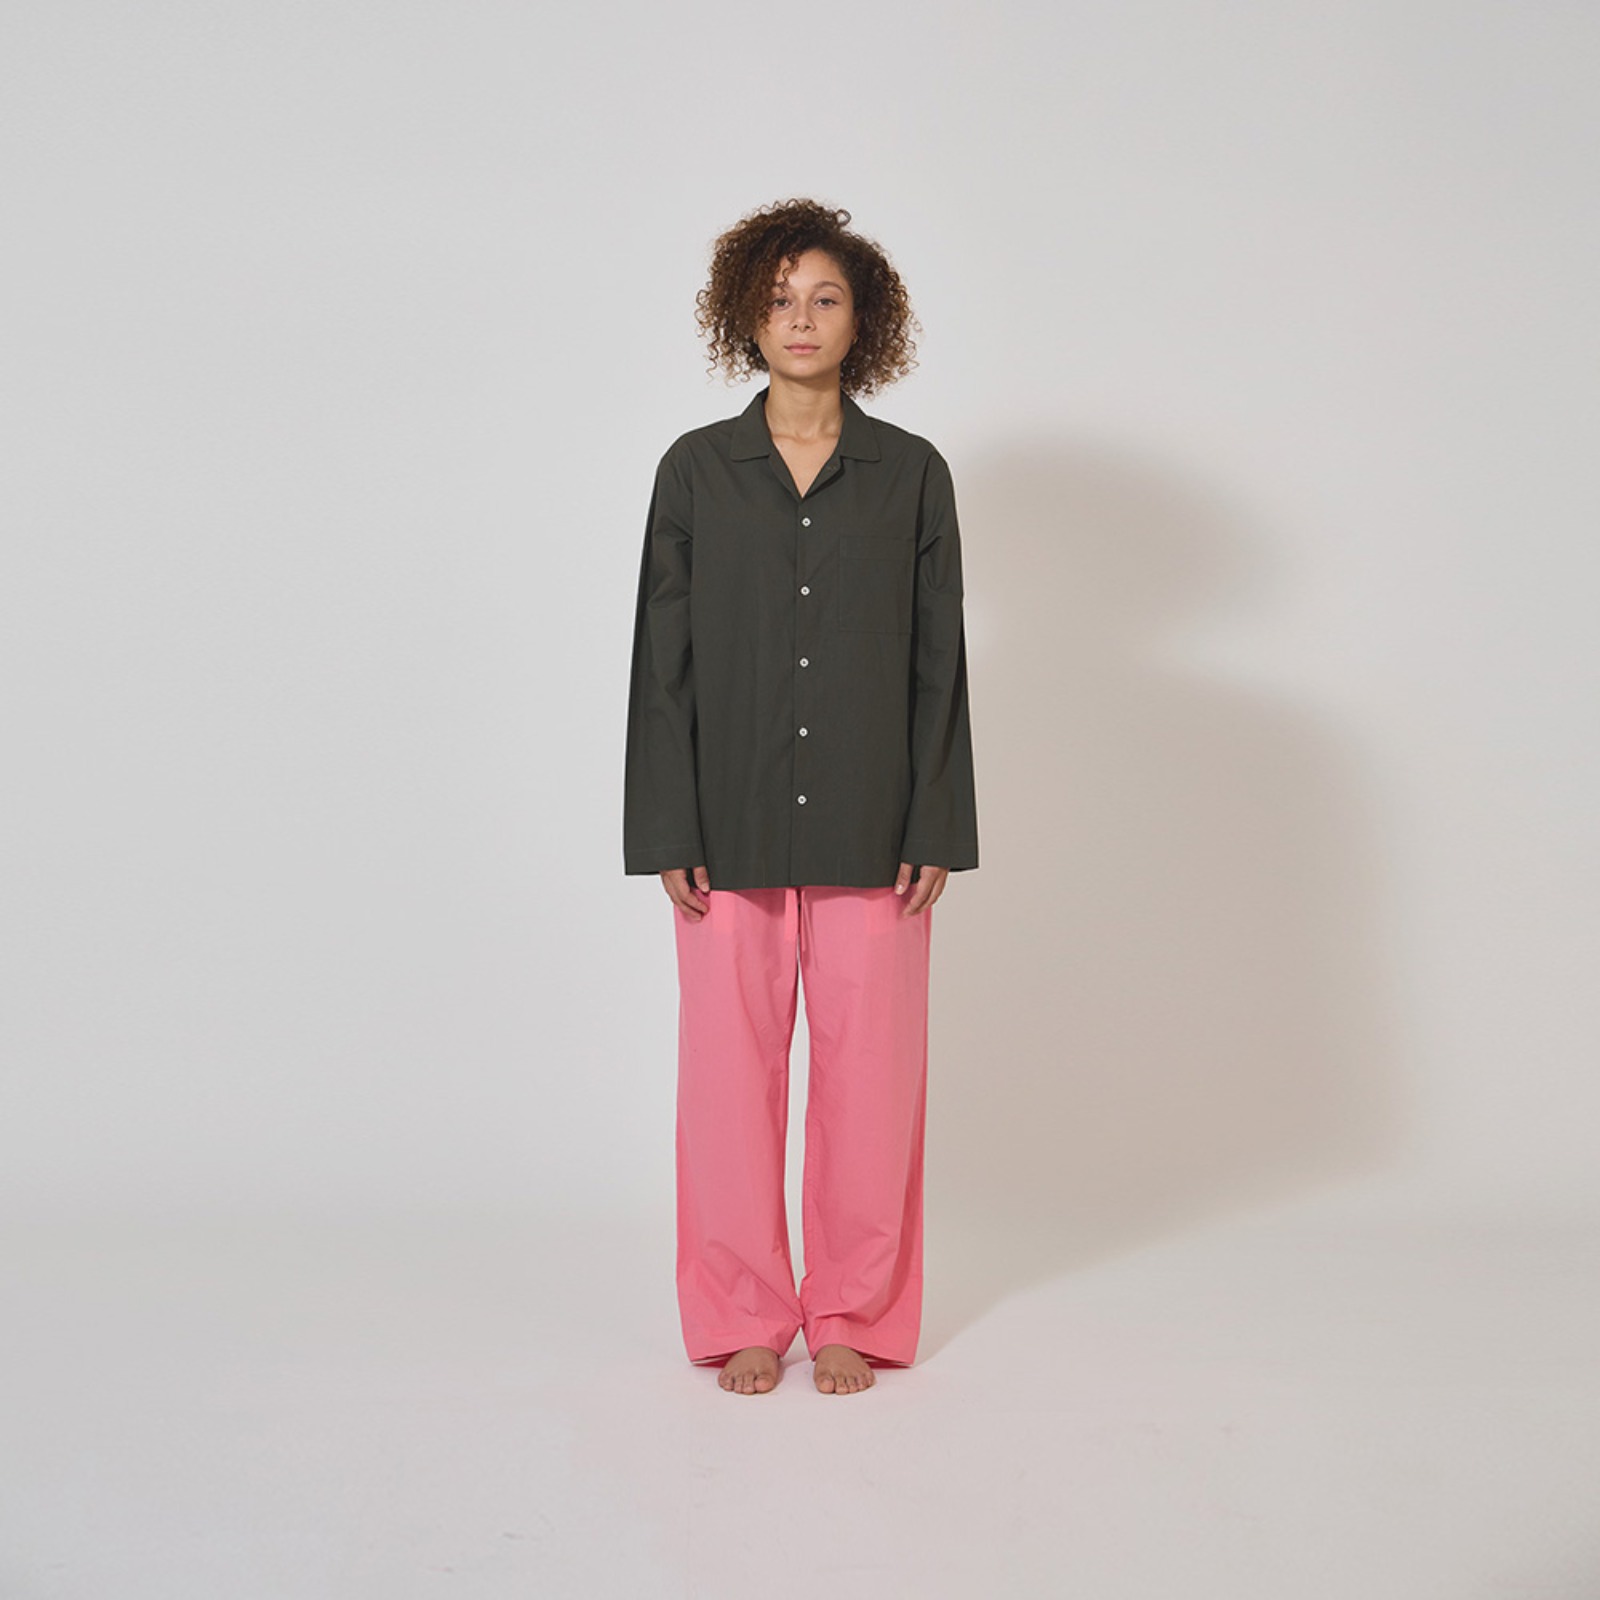 챕터원,[Spring fabric collection, 20%] 파자마 세트 - 딥그린/핑크 (남녀공용) | 긴팔/긴바지